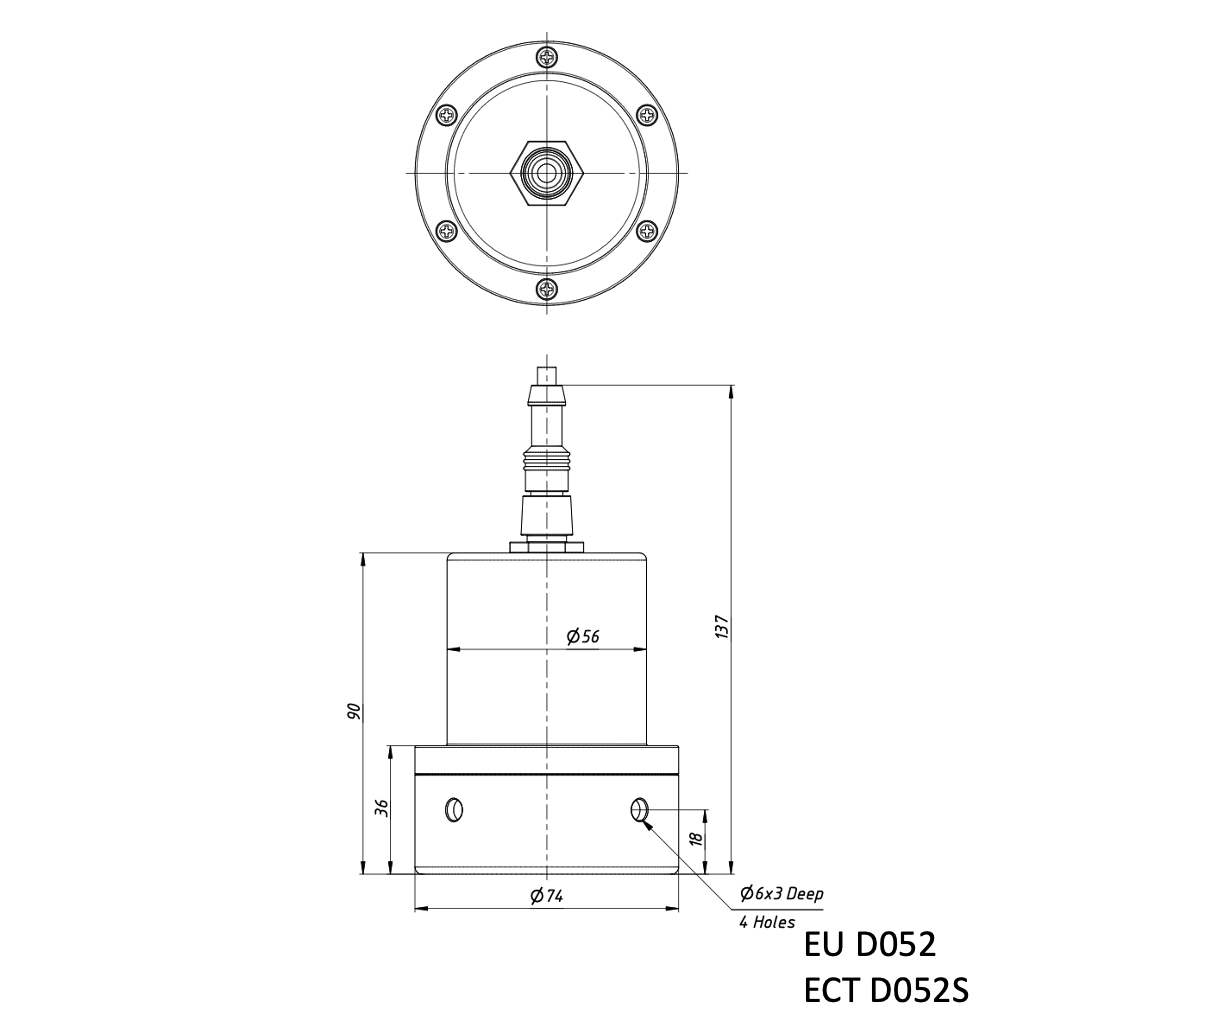 Echologger Echosounder ECT D032S dimensions